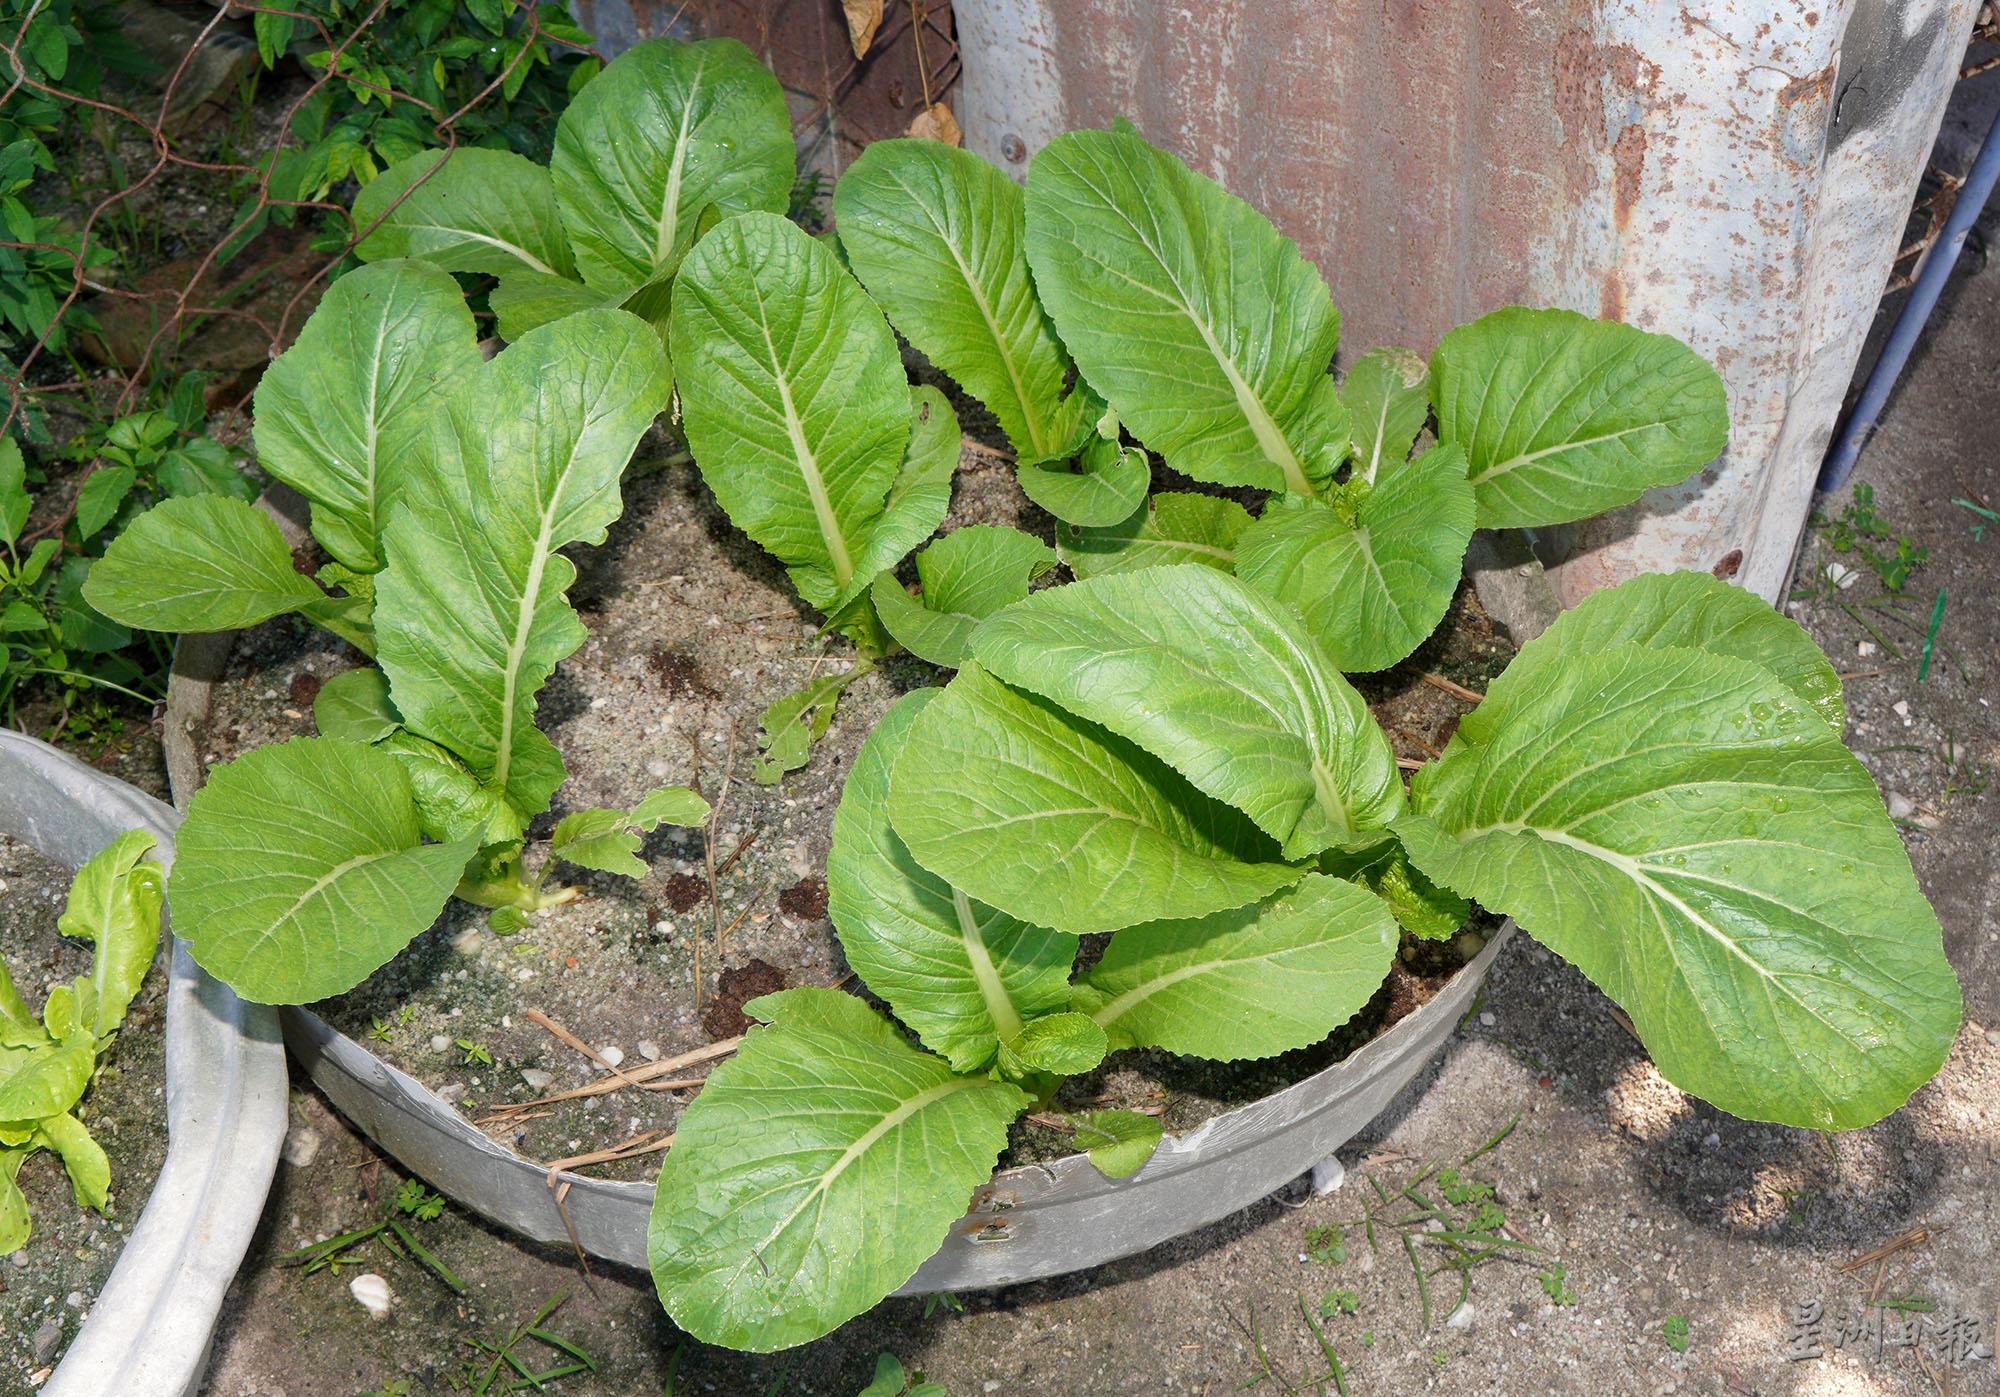 相比同时期栽种在土地上的芥菜，栽种在盘子里的芥菜显得较小。

